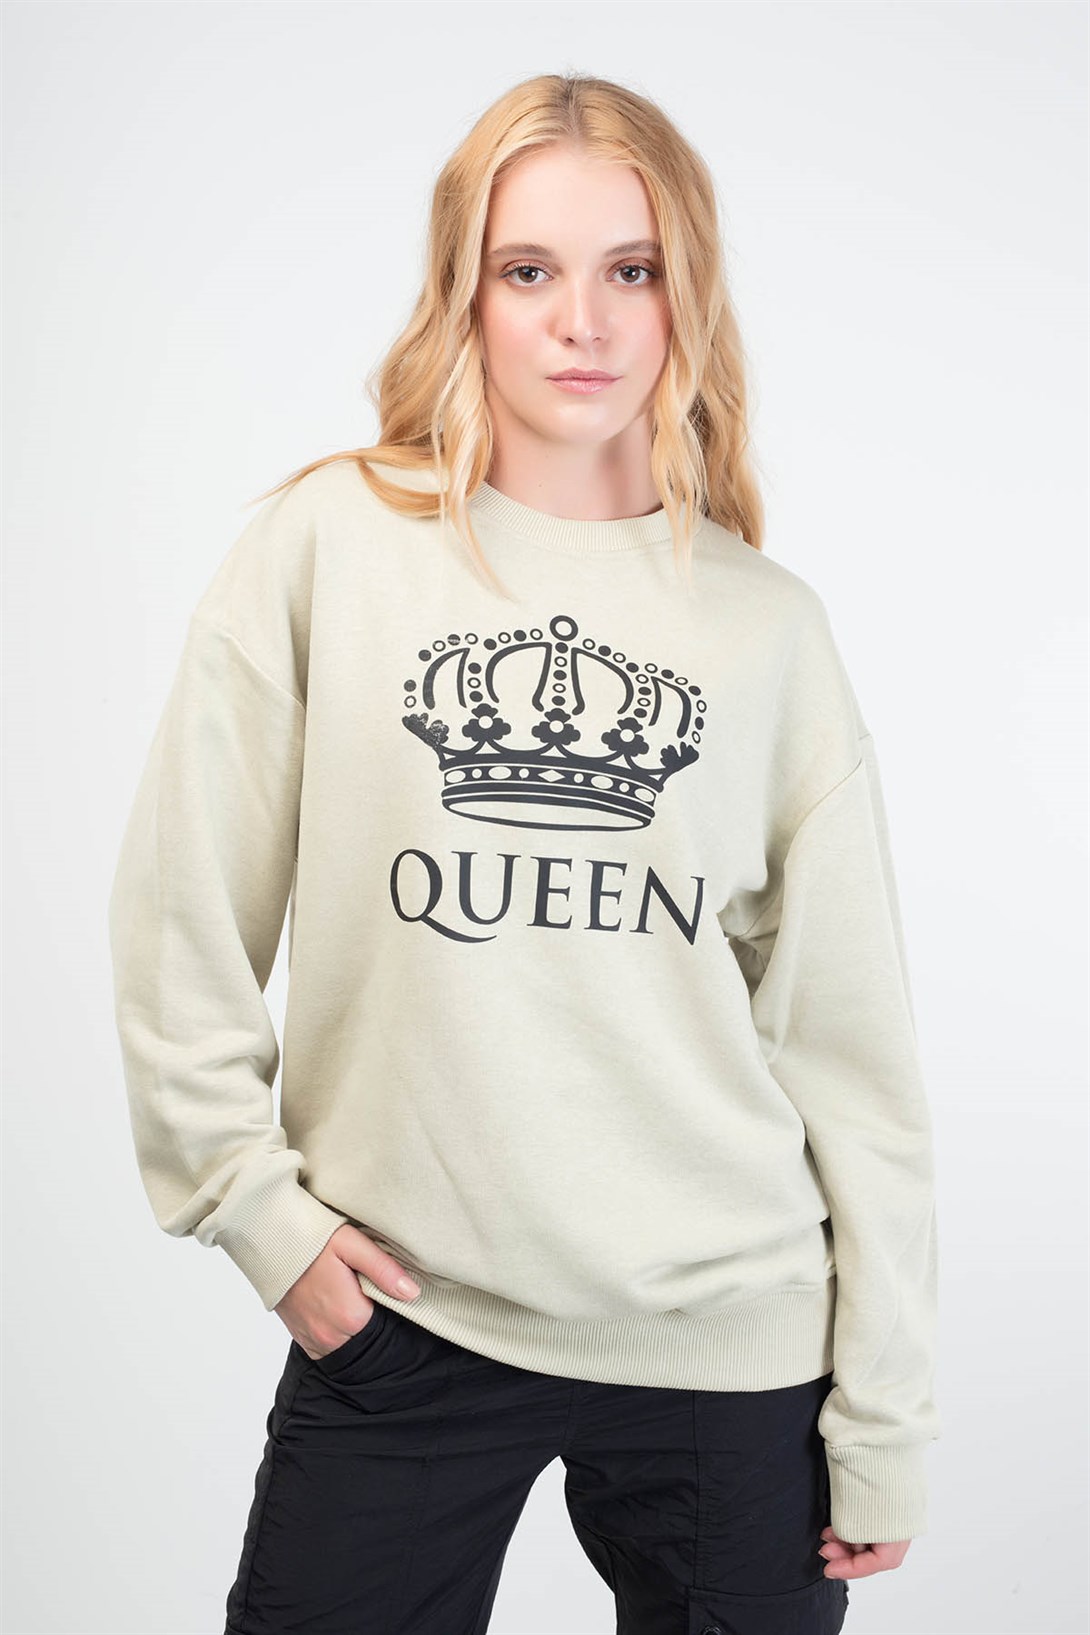 Trendiz Queen Couple Kadın Yuvarlak Yaka Sweatshirt Bej 121106